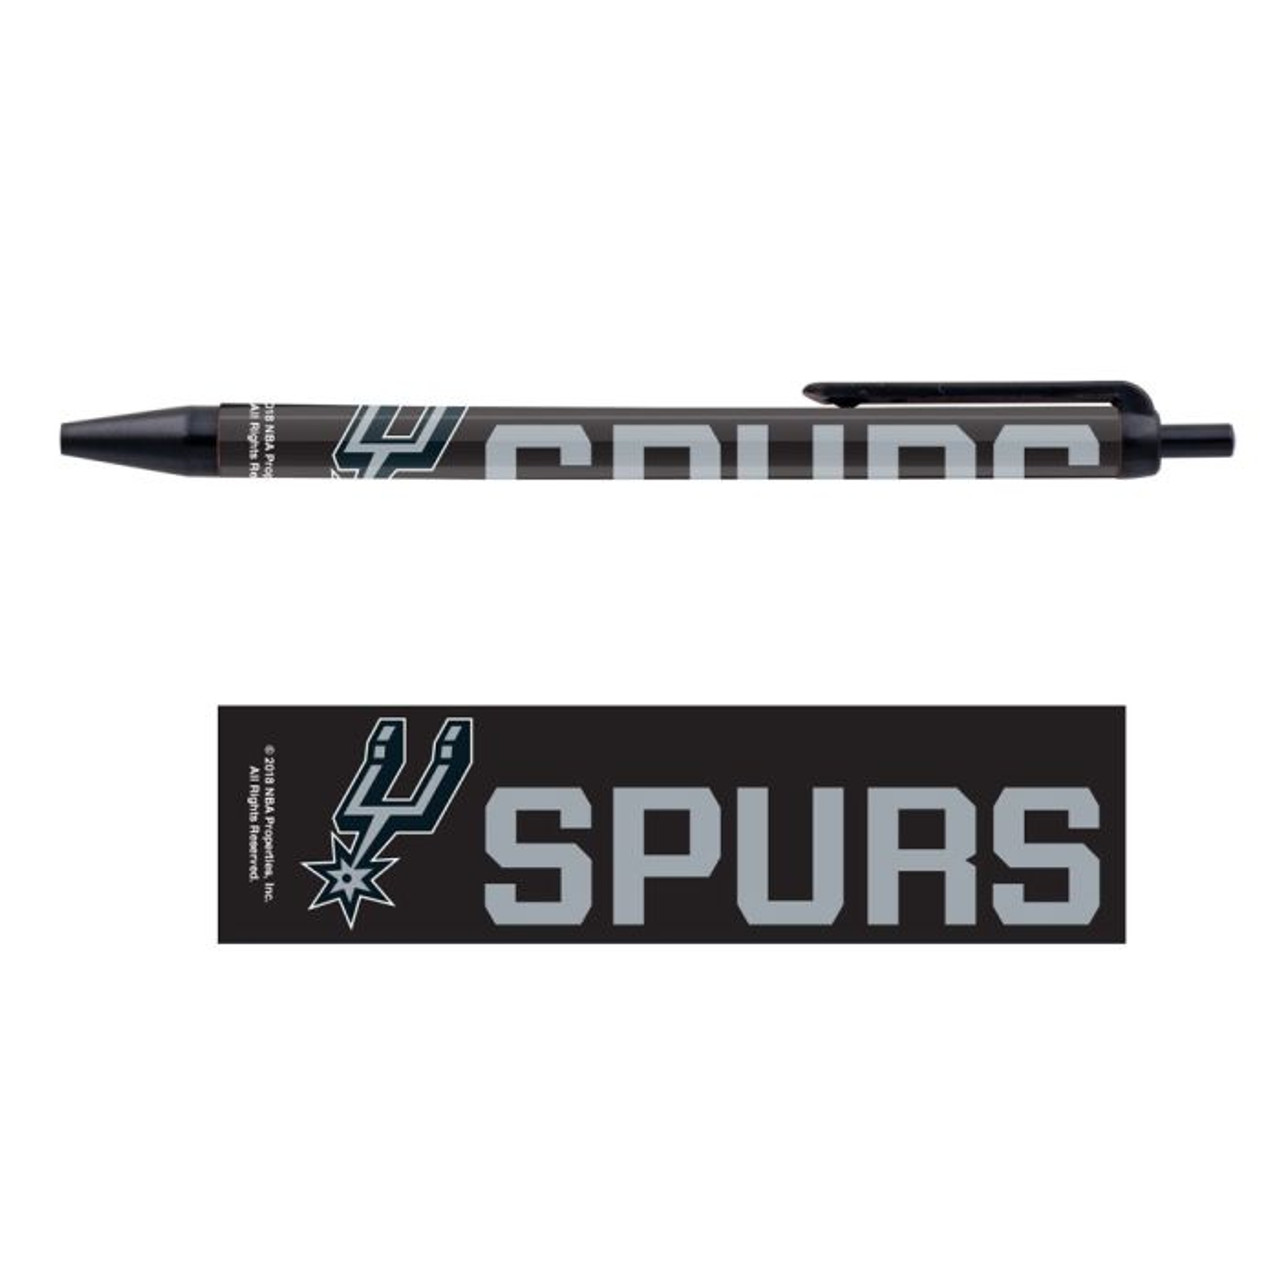 San Antonio Spurs WinCraft 5 Pack Pen Set - The Official Spurs Fan